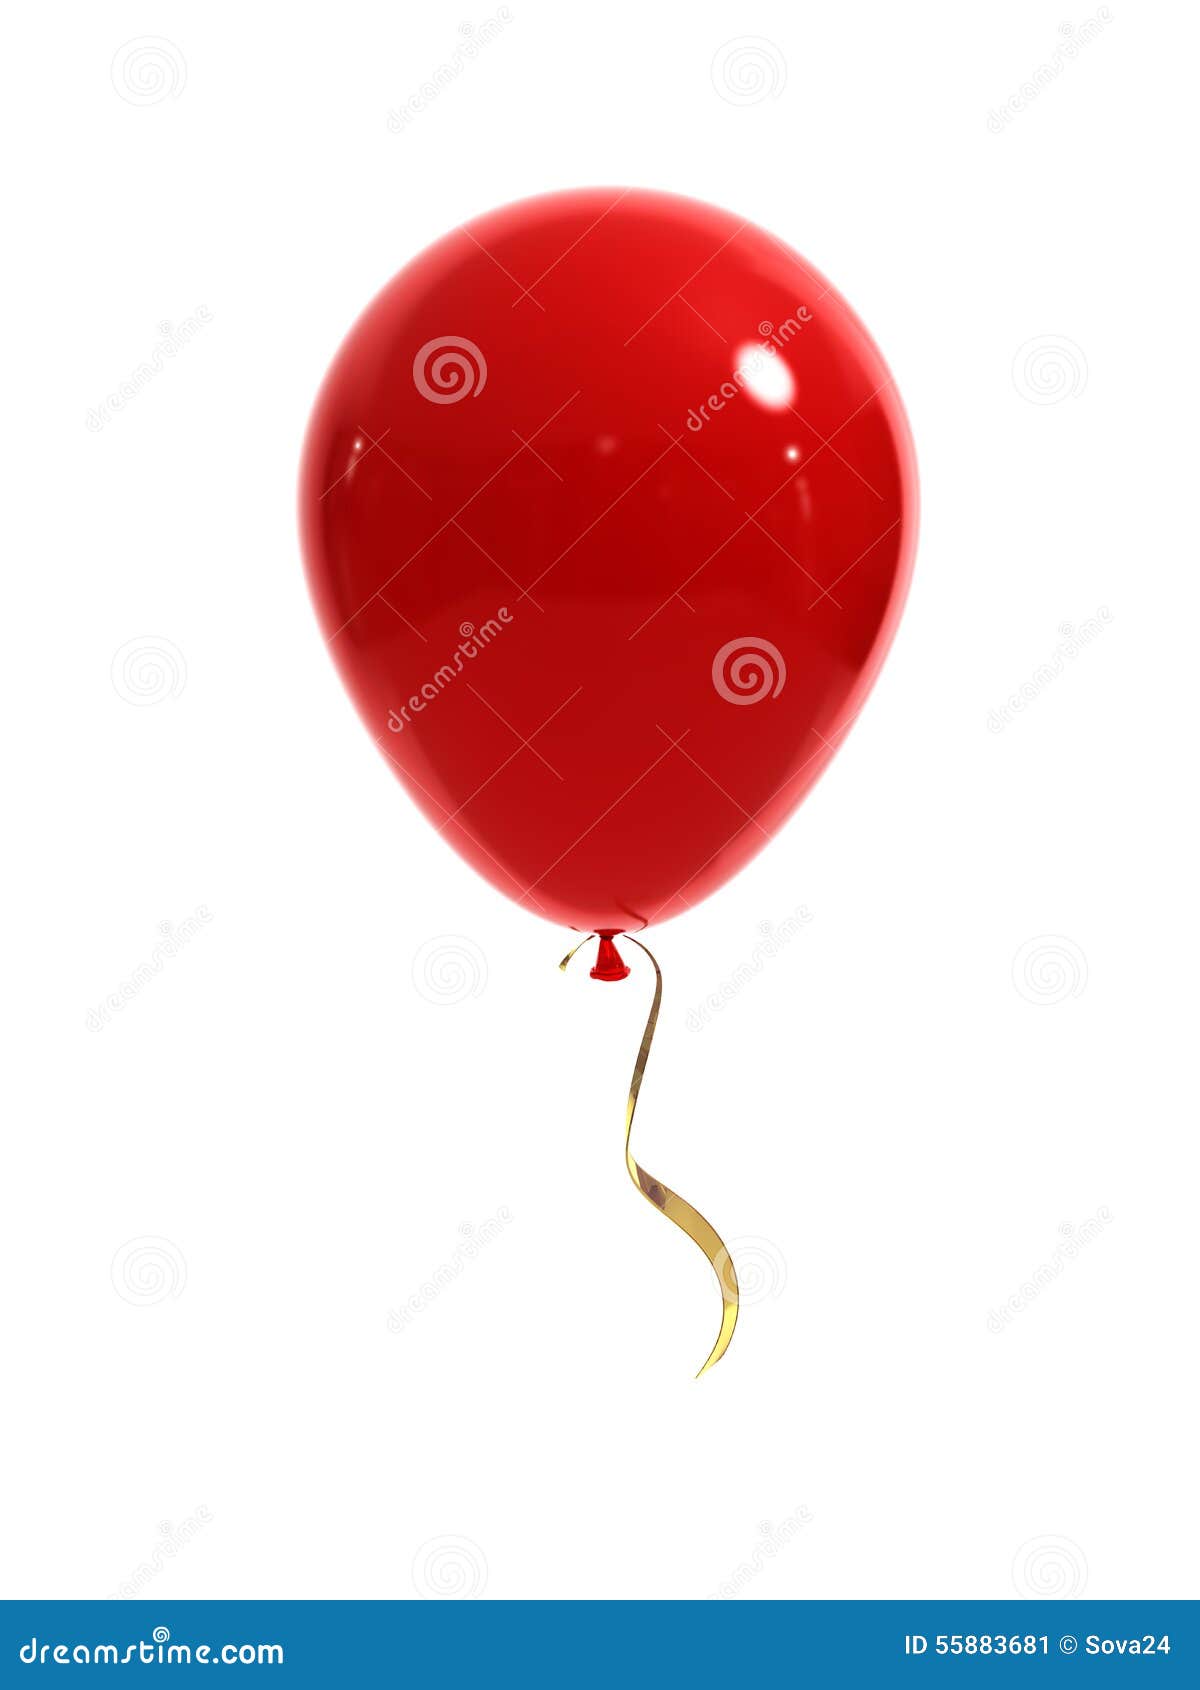 Ballon Rouge Et Noir Avec Fond De Ligne De Cadre Blanc. Illustration  Vectorielle.